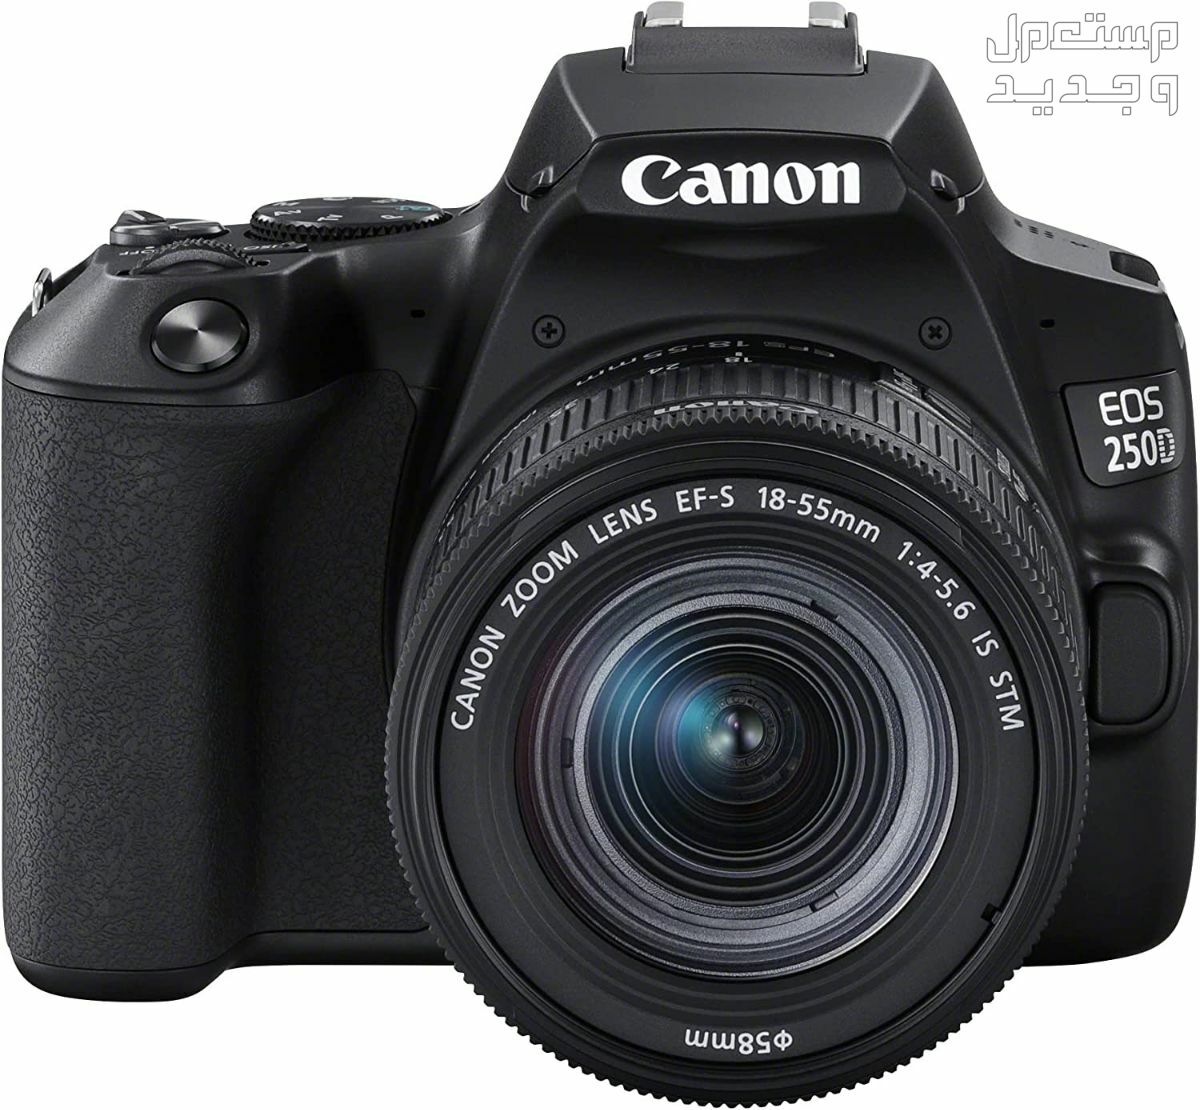 سعر ومميزات ومواصفات أرخص 5 كاميرات تصوير من كانون في قطر مميزات كاميرا Canon EOS 250D